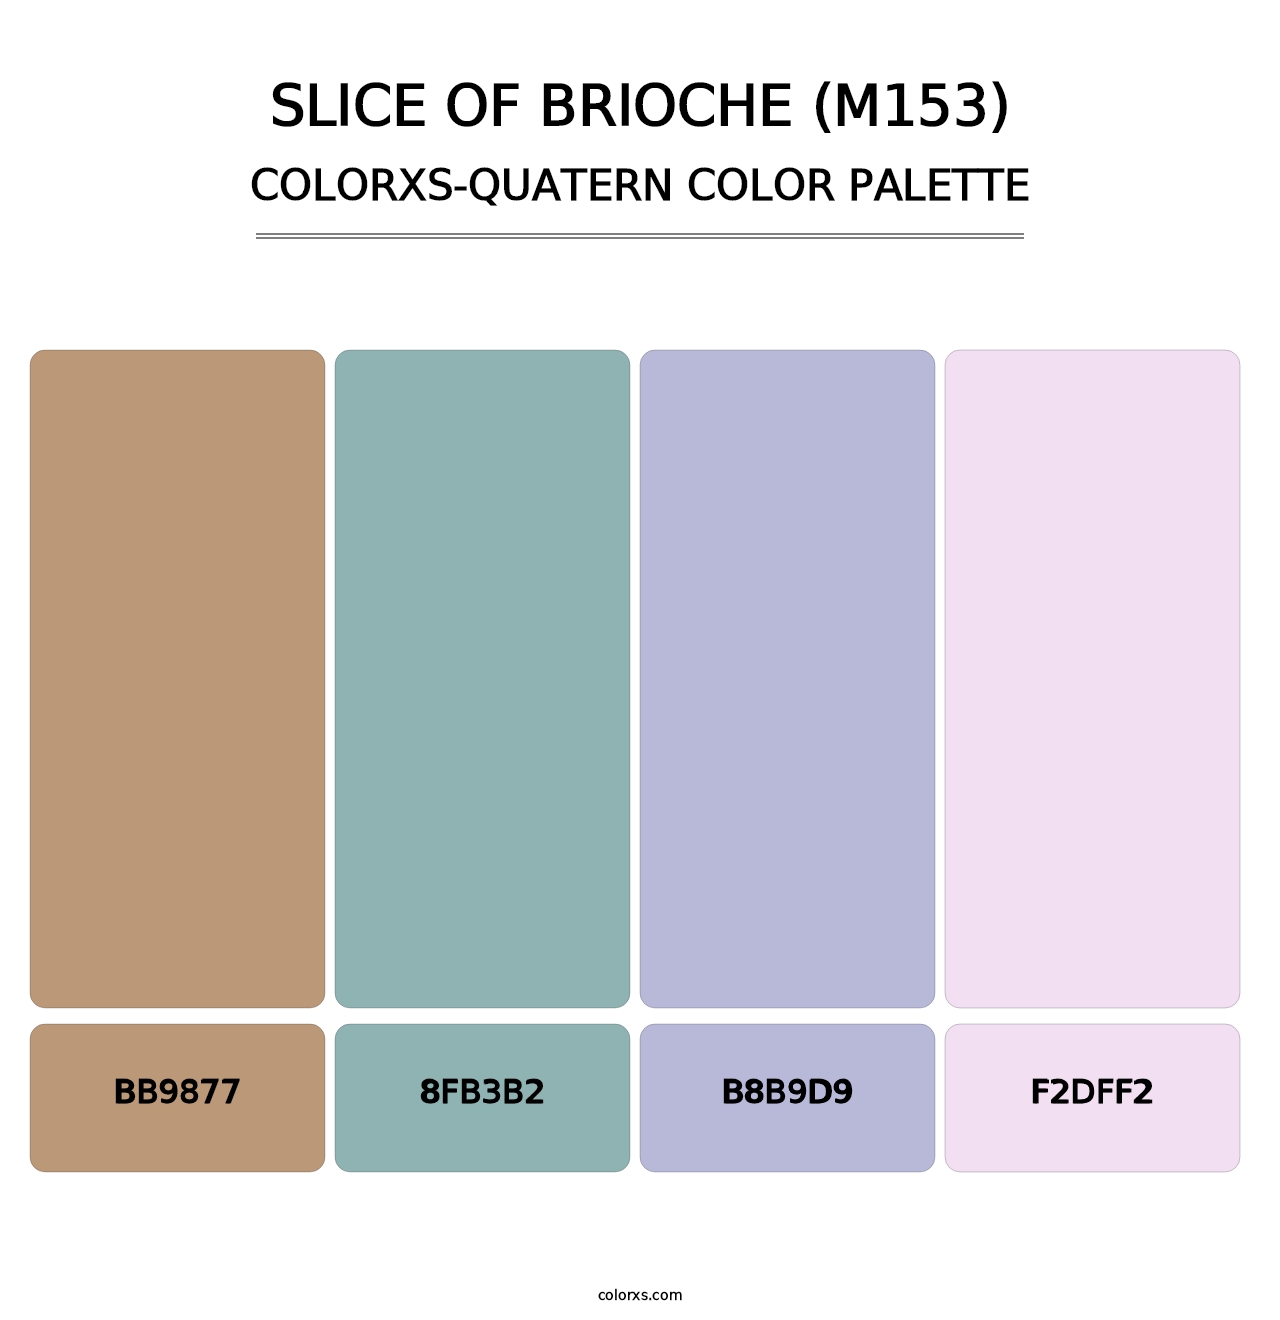 Slice of Brioche (M153) - Colorxs Quatern Palette